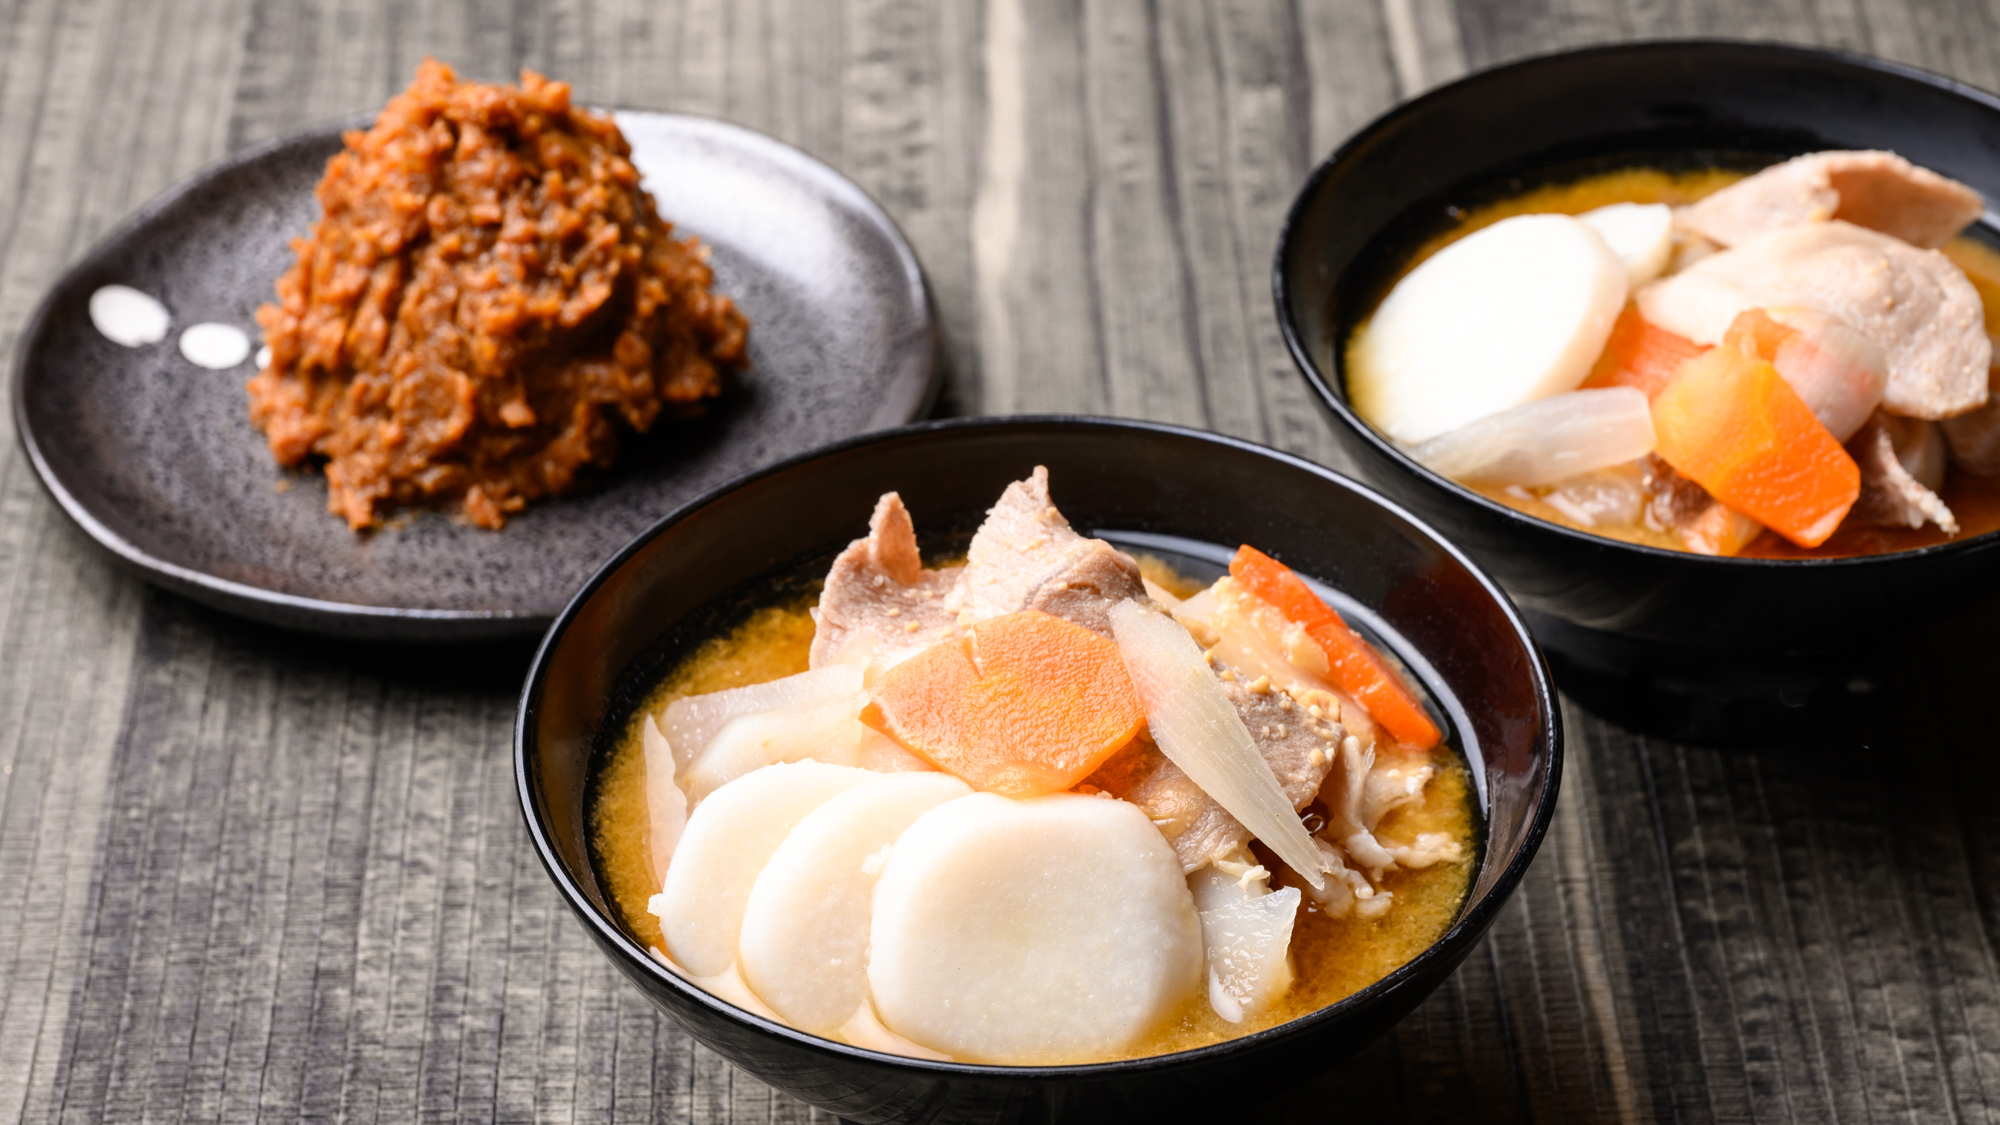 【仙台西口・東口限定】仙台の芋煮は味噌味。ミヤギシロメとひとめぼれを使った味噌の深い味わいが特長。